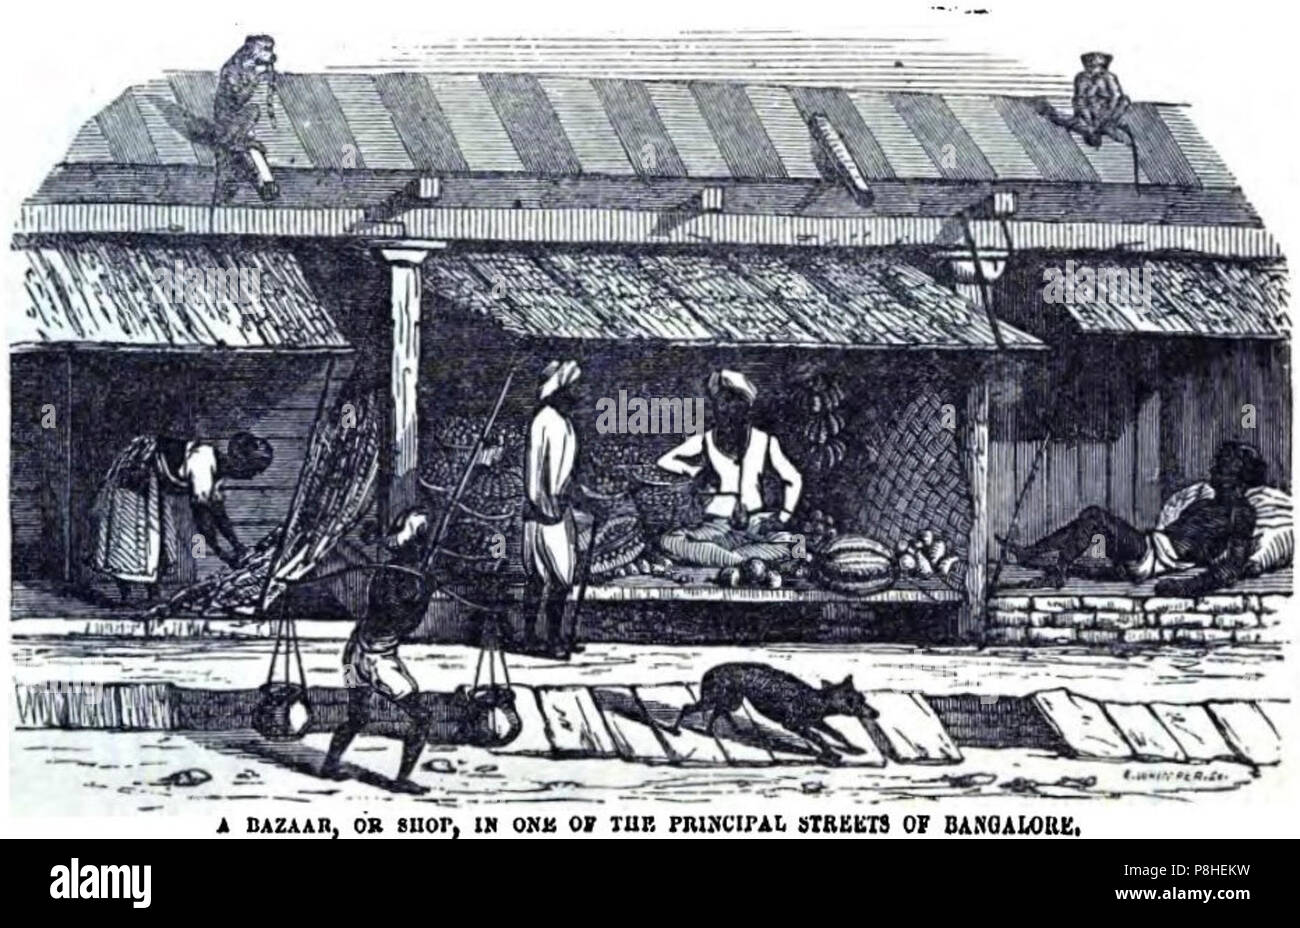 Un Bazar, ou boutique, sur l'une des principales rues de Bangalore (p.97, 1856) - Copie. Banque D'Images